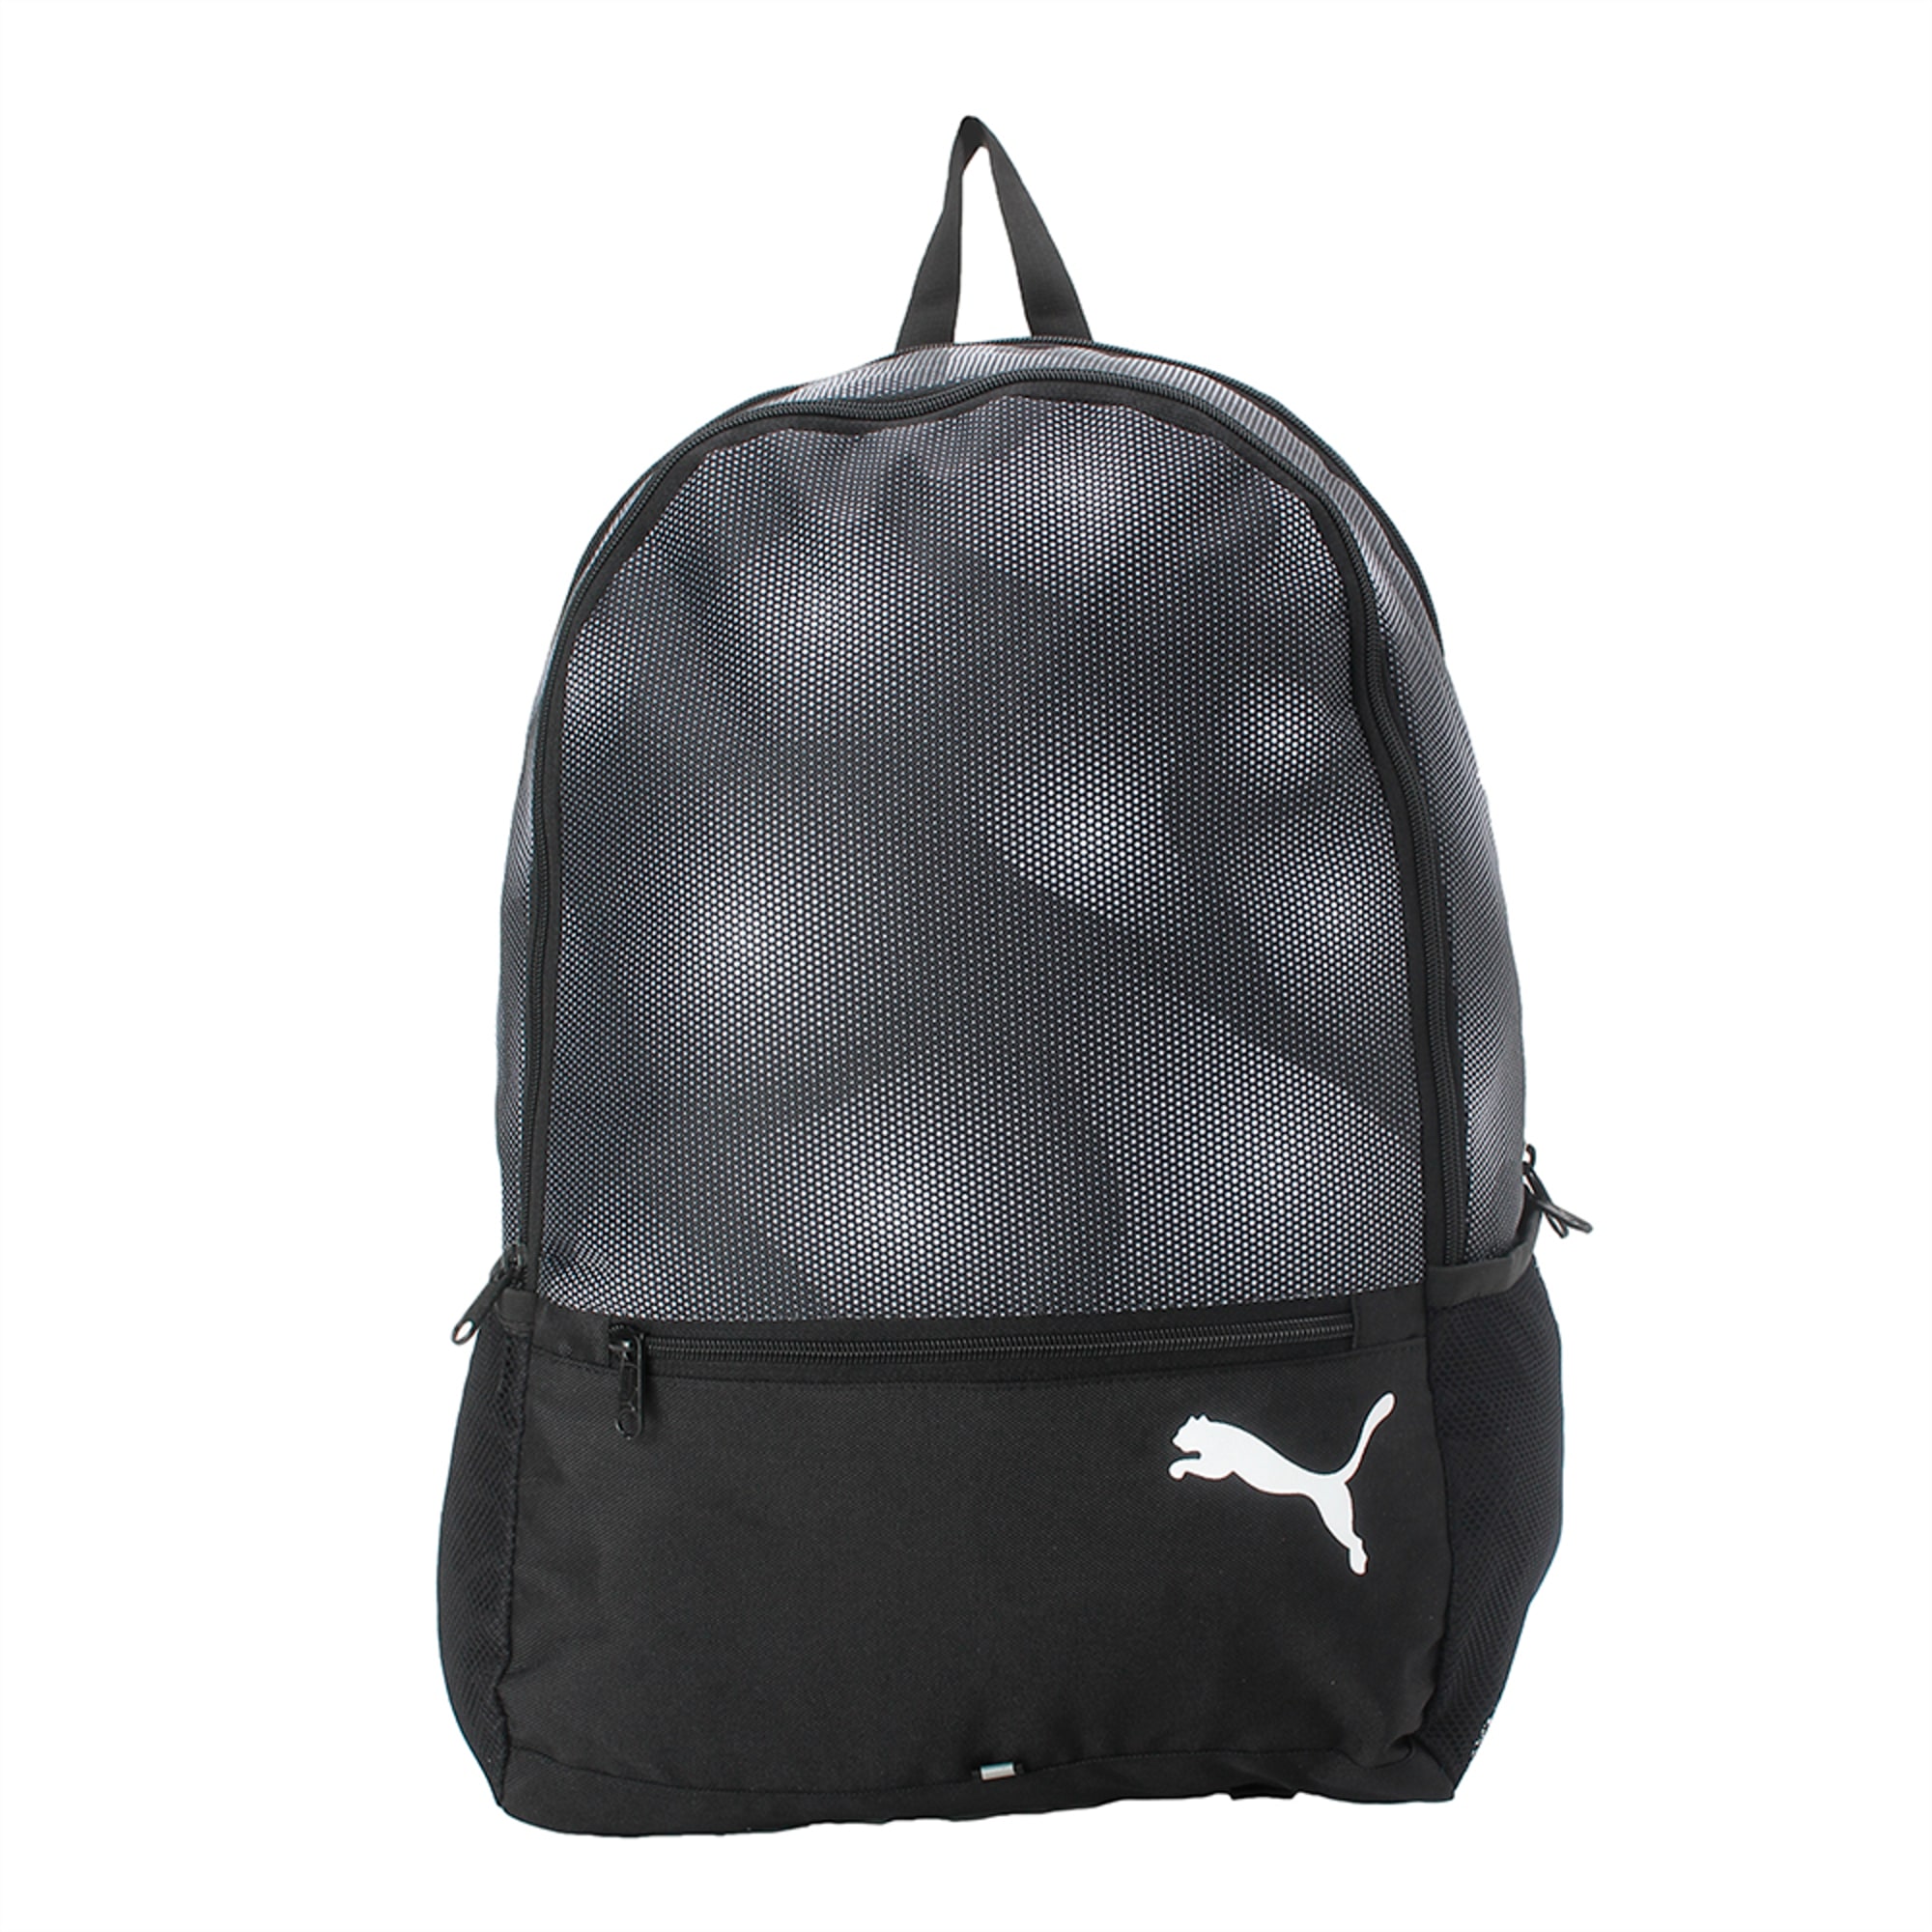 puma alpha backpack 58% - www.sbs-turkey.com